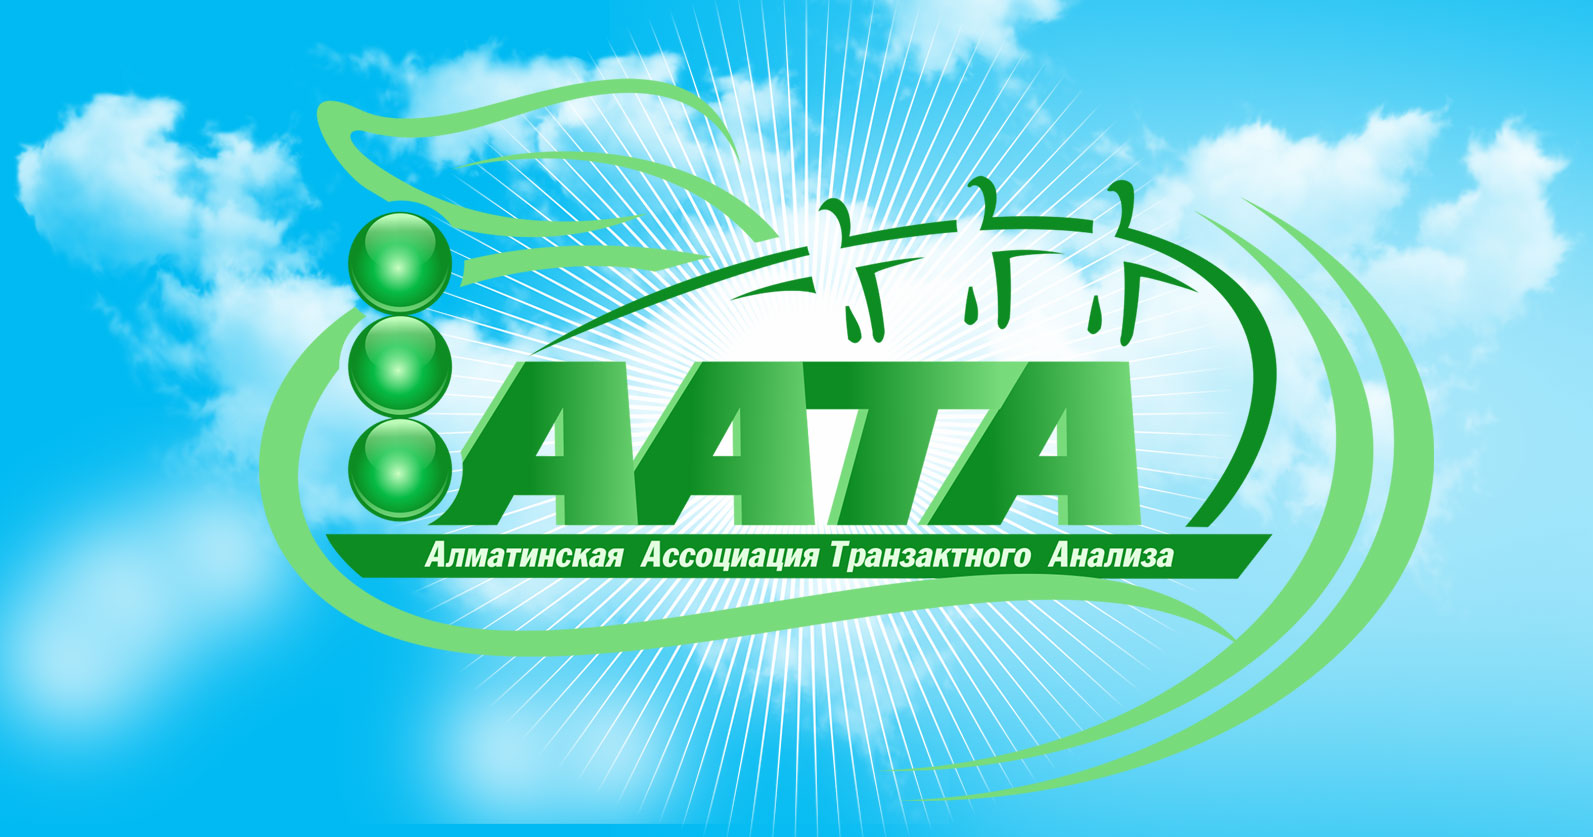 Член ААТА имеет право размещать информацию о себе, своих обучающих семинарах и тренингах, семинарах и тренингах приглашенных им тренеров на ресурсах ААТА (сайт ААТА, чаты ААТА, соцсети ААТА, мероприятиях ААТА и пр.).